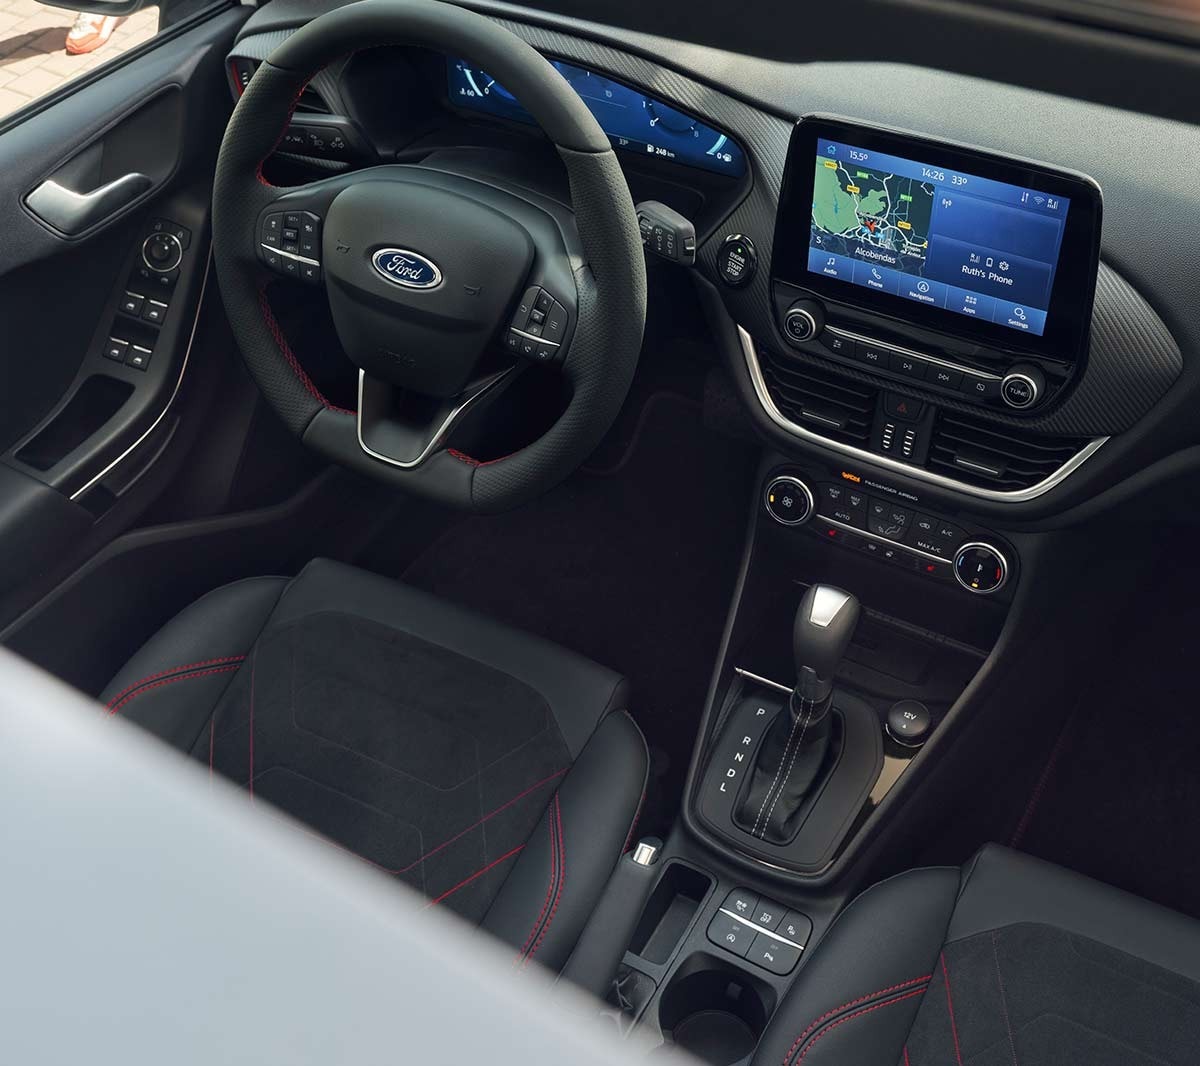 Ford Fiesta. Vue intérieure du cockpit, volant et écran tactile Ford Sync 3